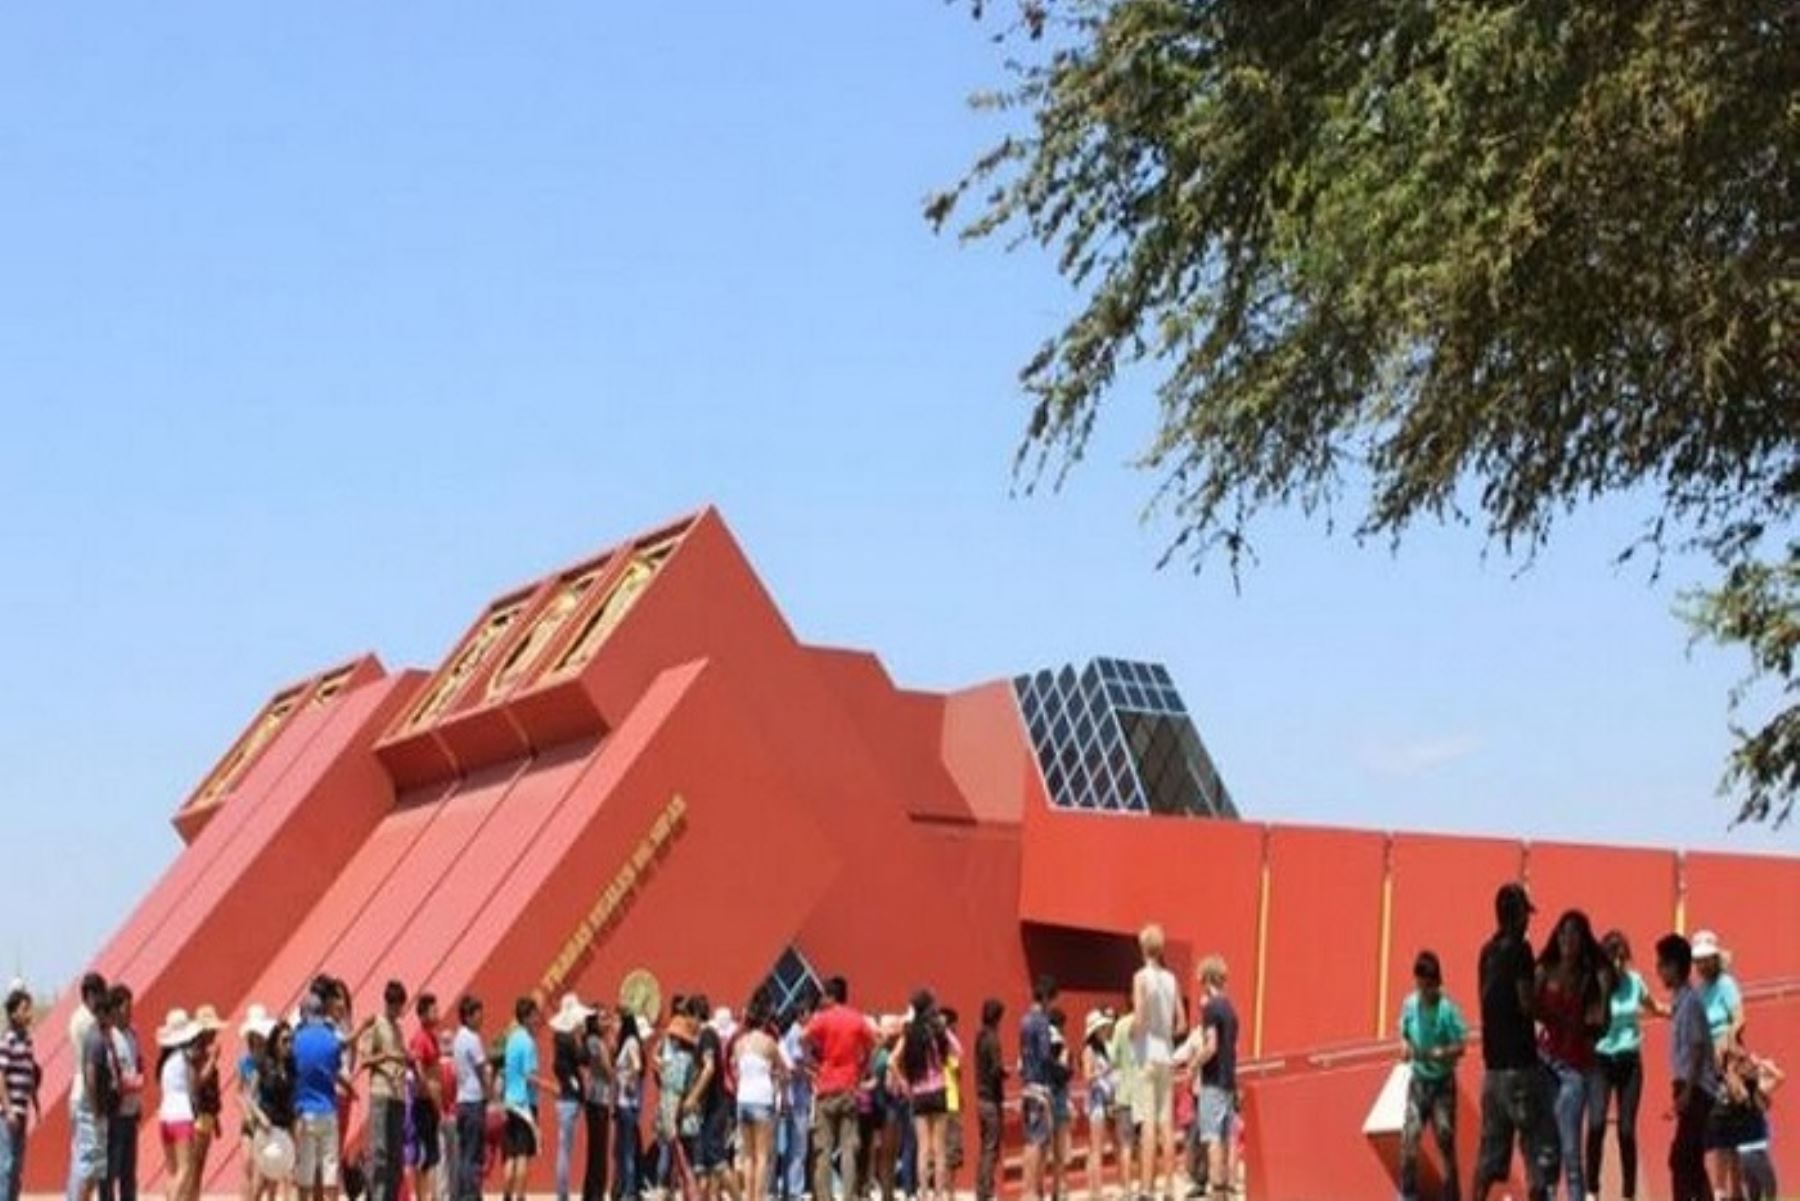 Museo Tumbas Reales de Sipán es el más visitado, pues alcanzó un total de 38 393 visitantes; seguido del Museo Arqueológico Nacional Bruning con 17 930 personas.